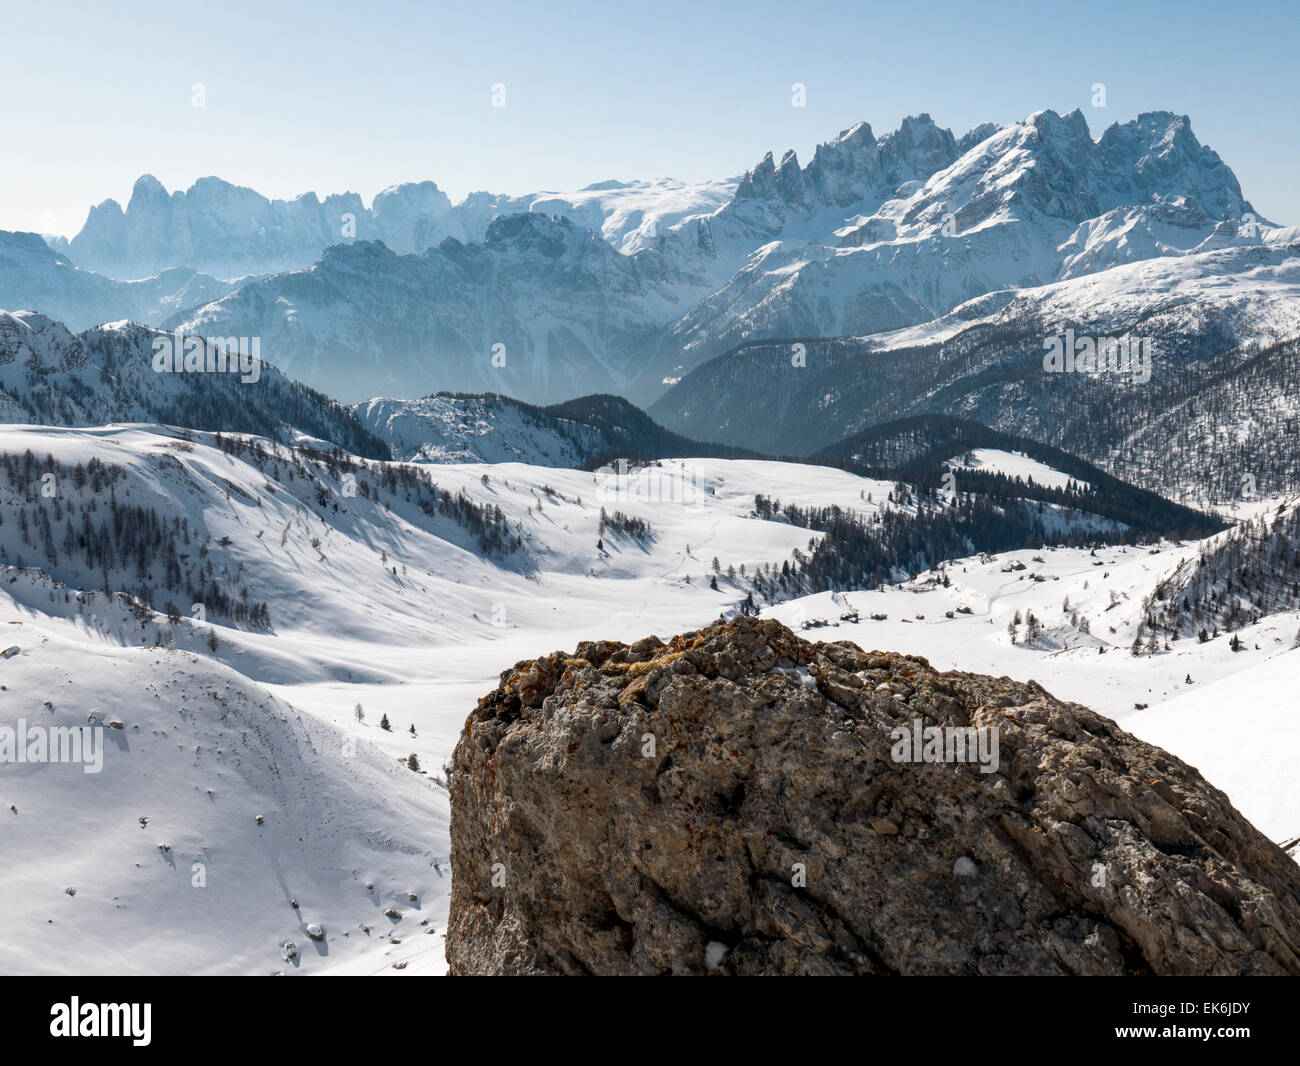 Rifugio Fuciade in distant valley, Pale di San Martino, Dolomite Mountains, Alps, Italy Stock Photo